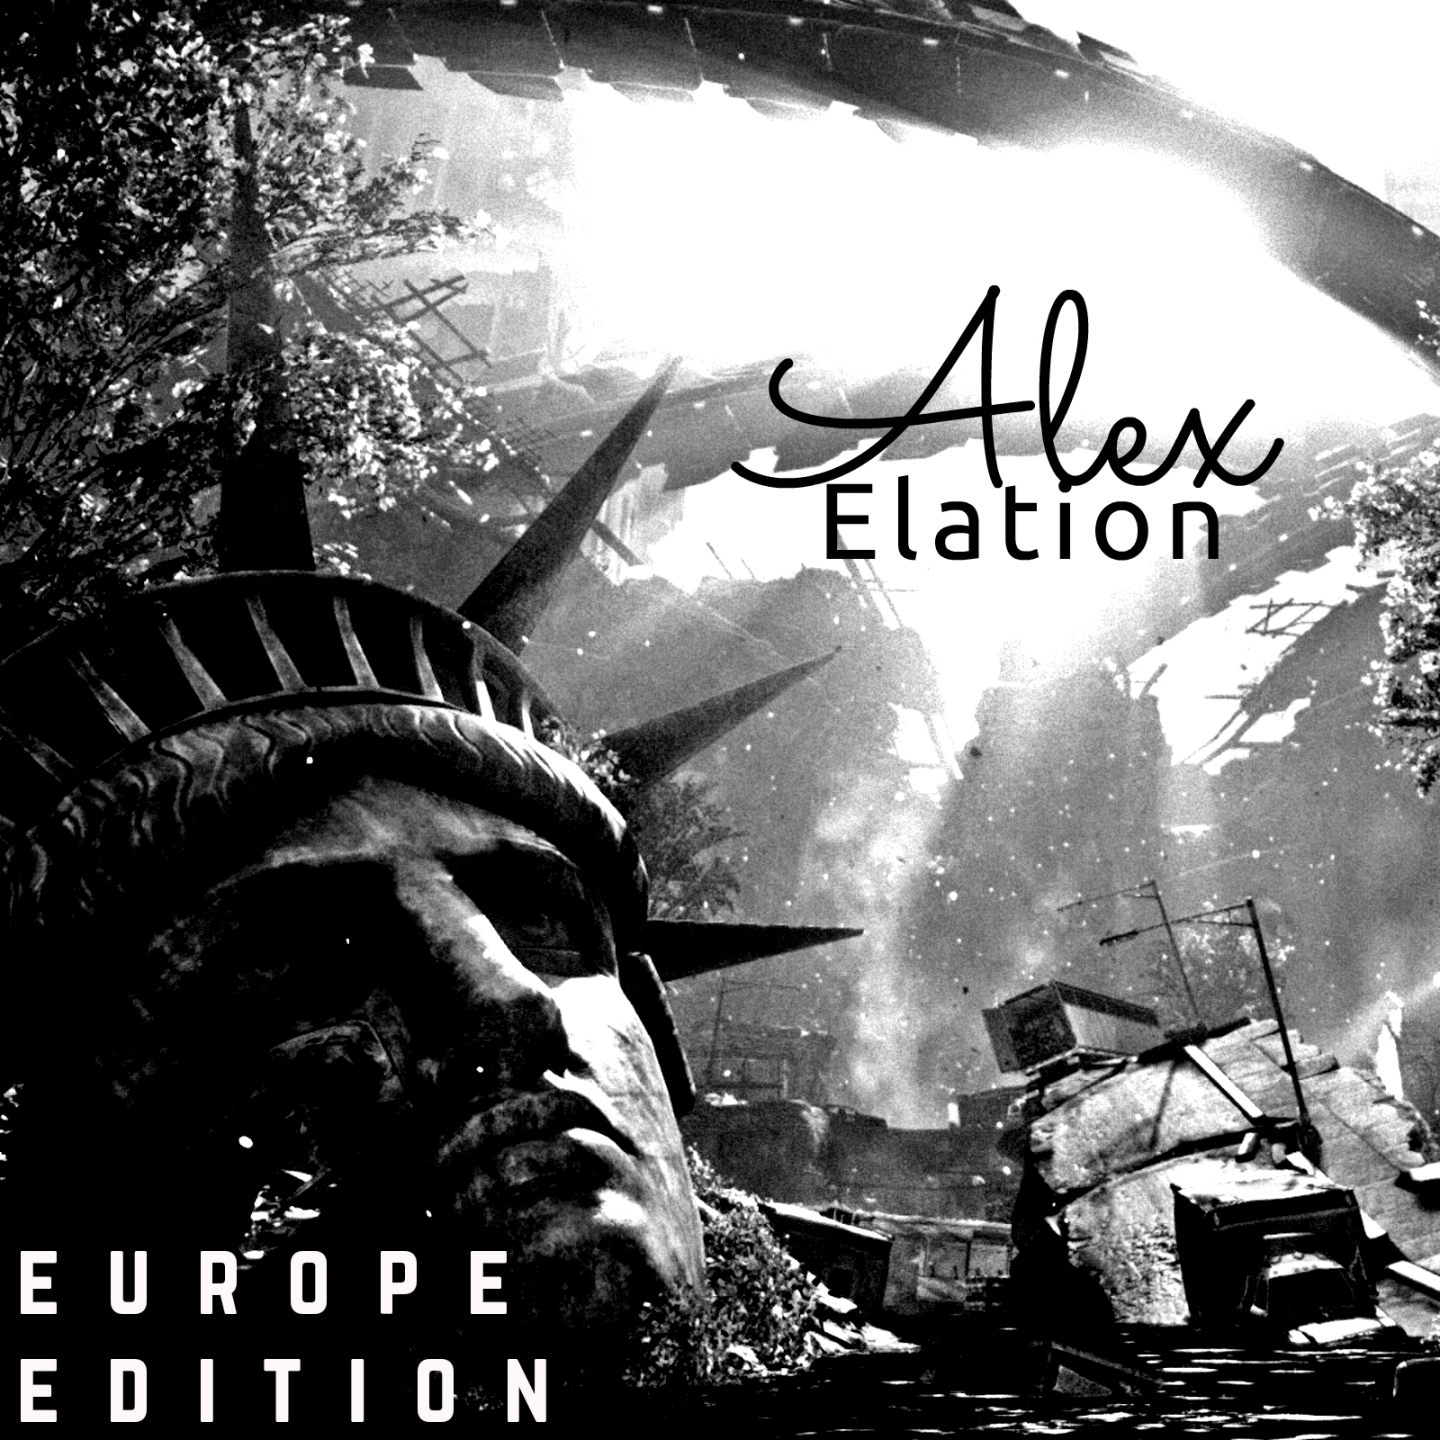 Elation (Europe Edition)